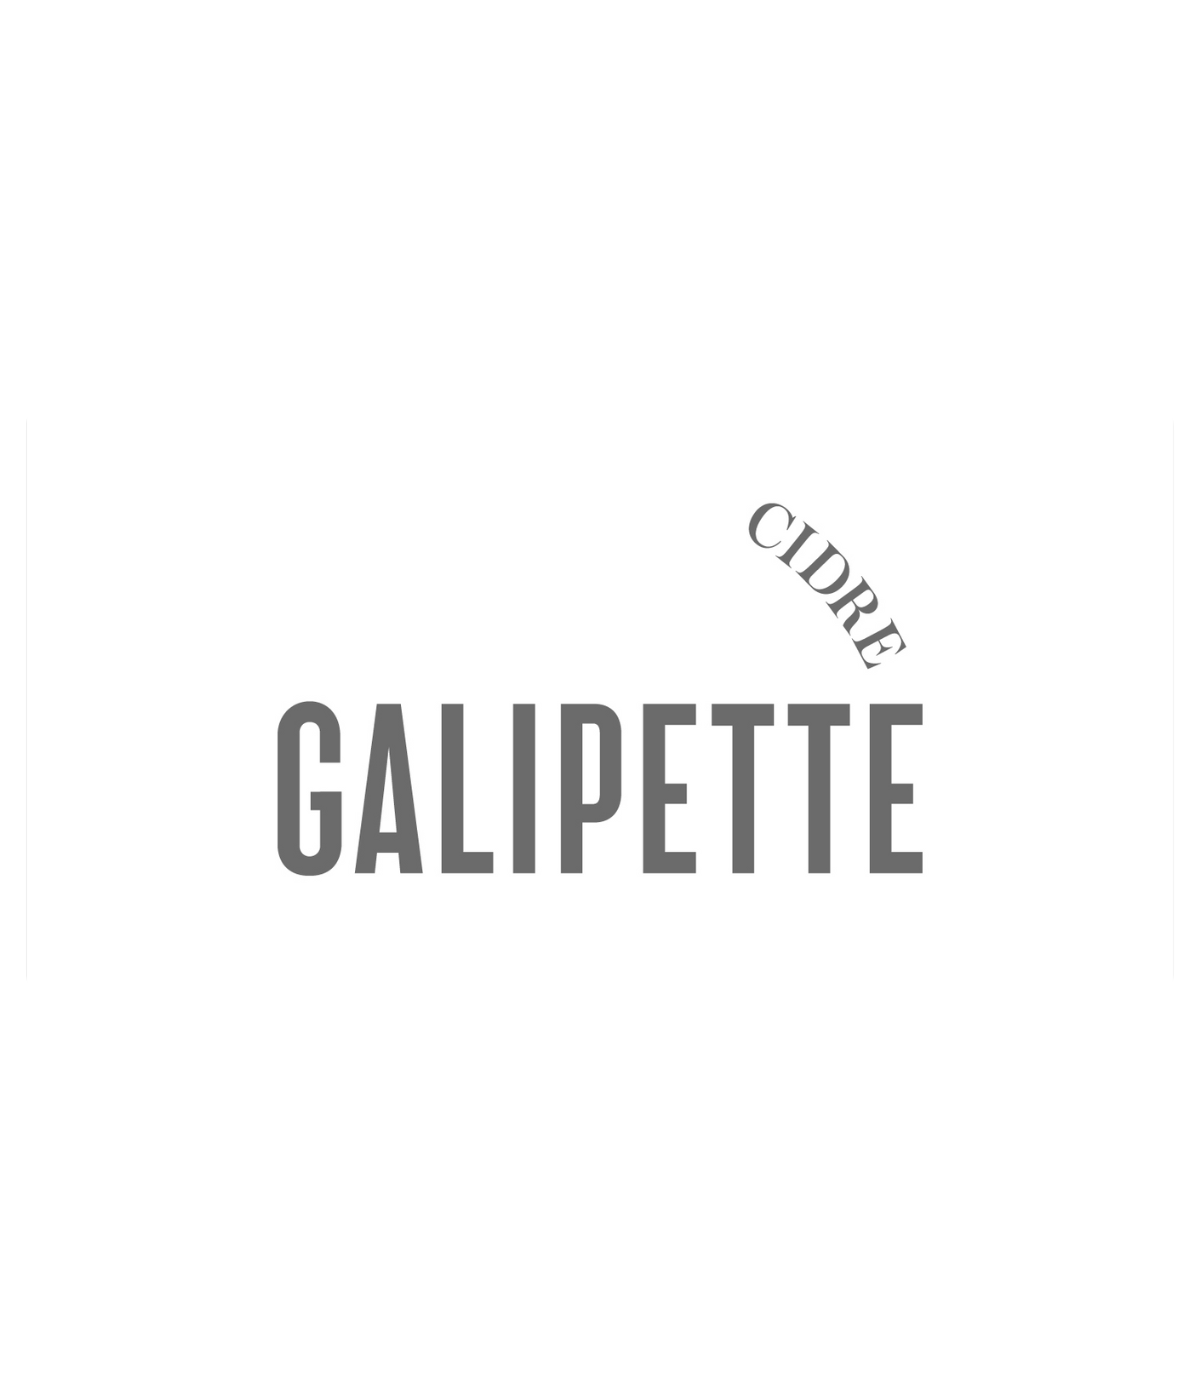 Galipette Cider